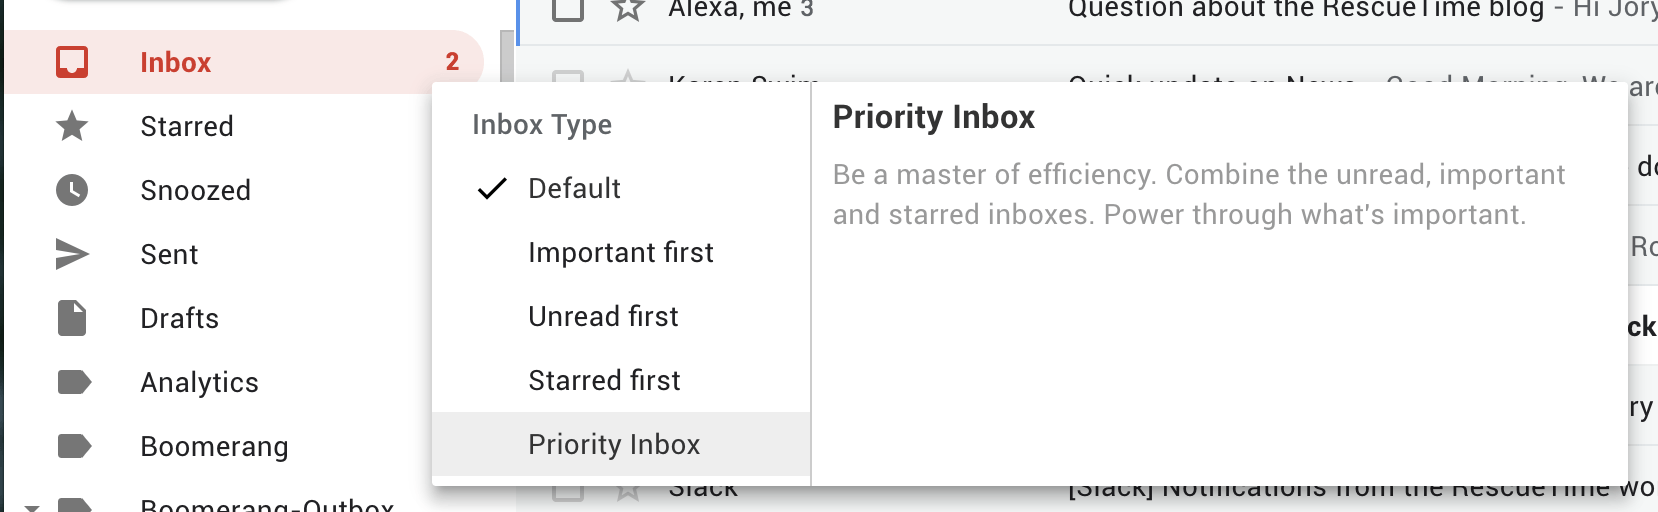 Gmail Priority Inbox